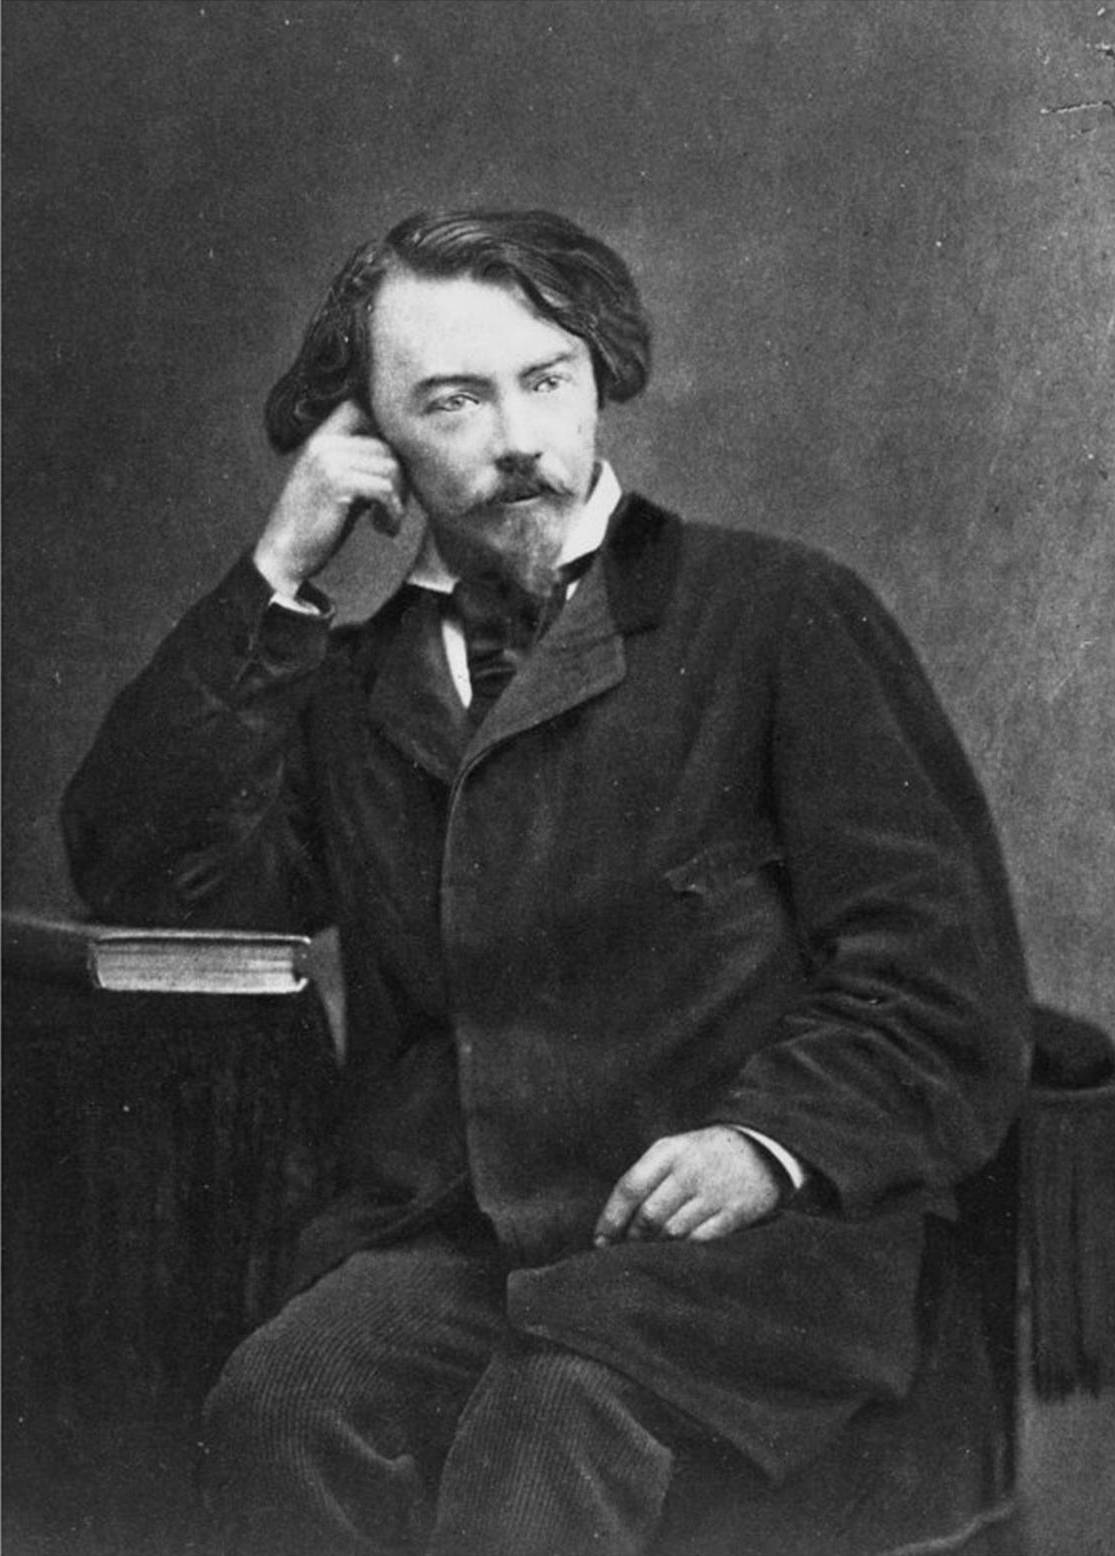 Photographie de Villiers de l'Isle-Adam, 1886 - source : Wikicommons